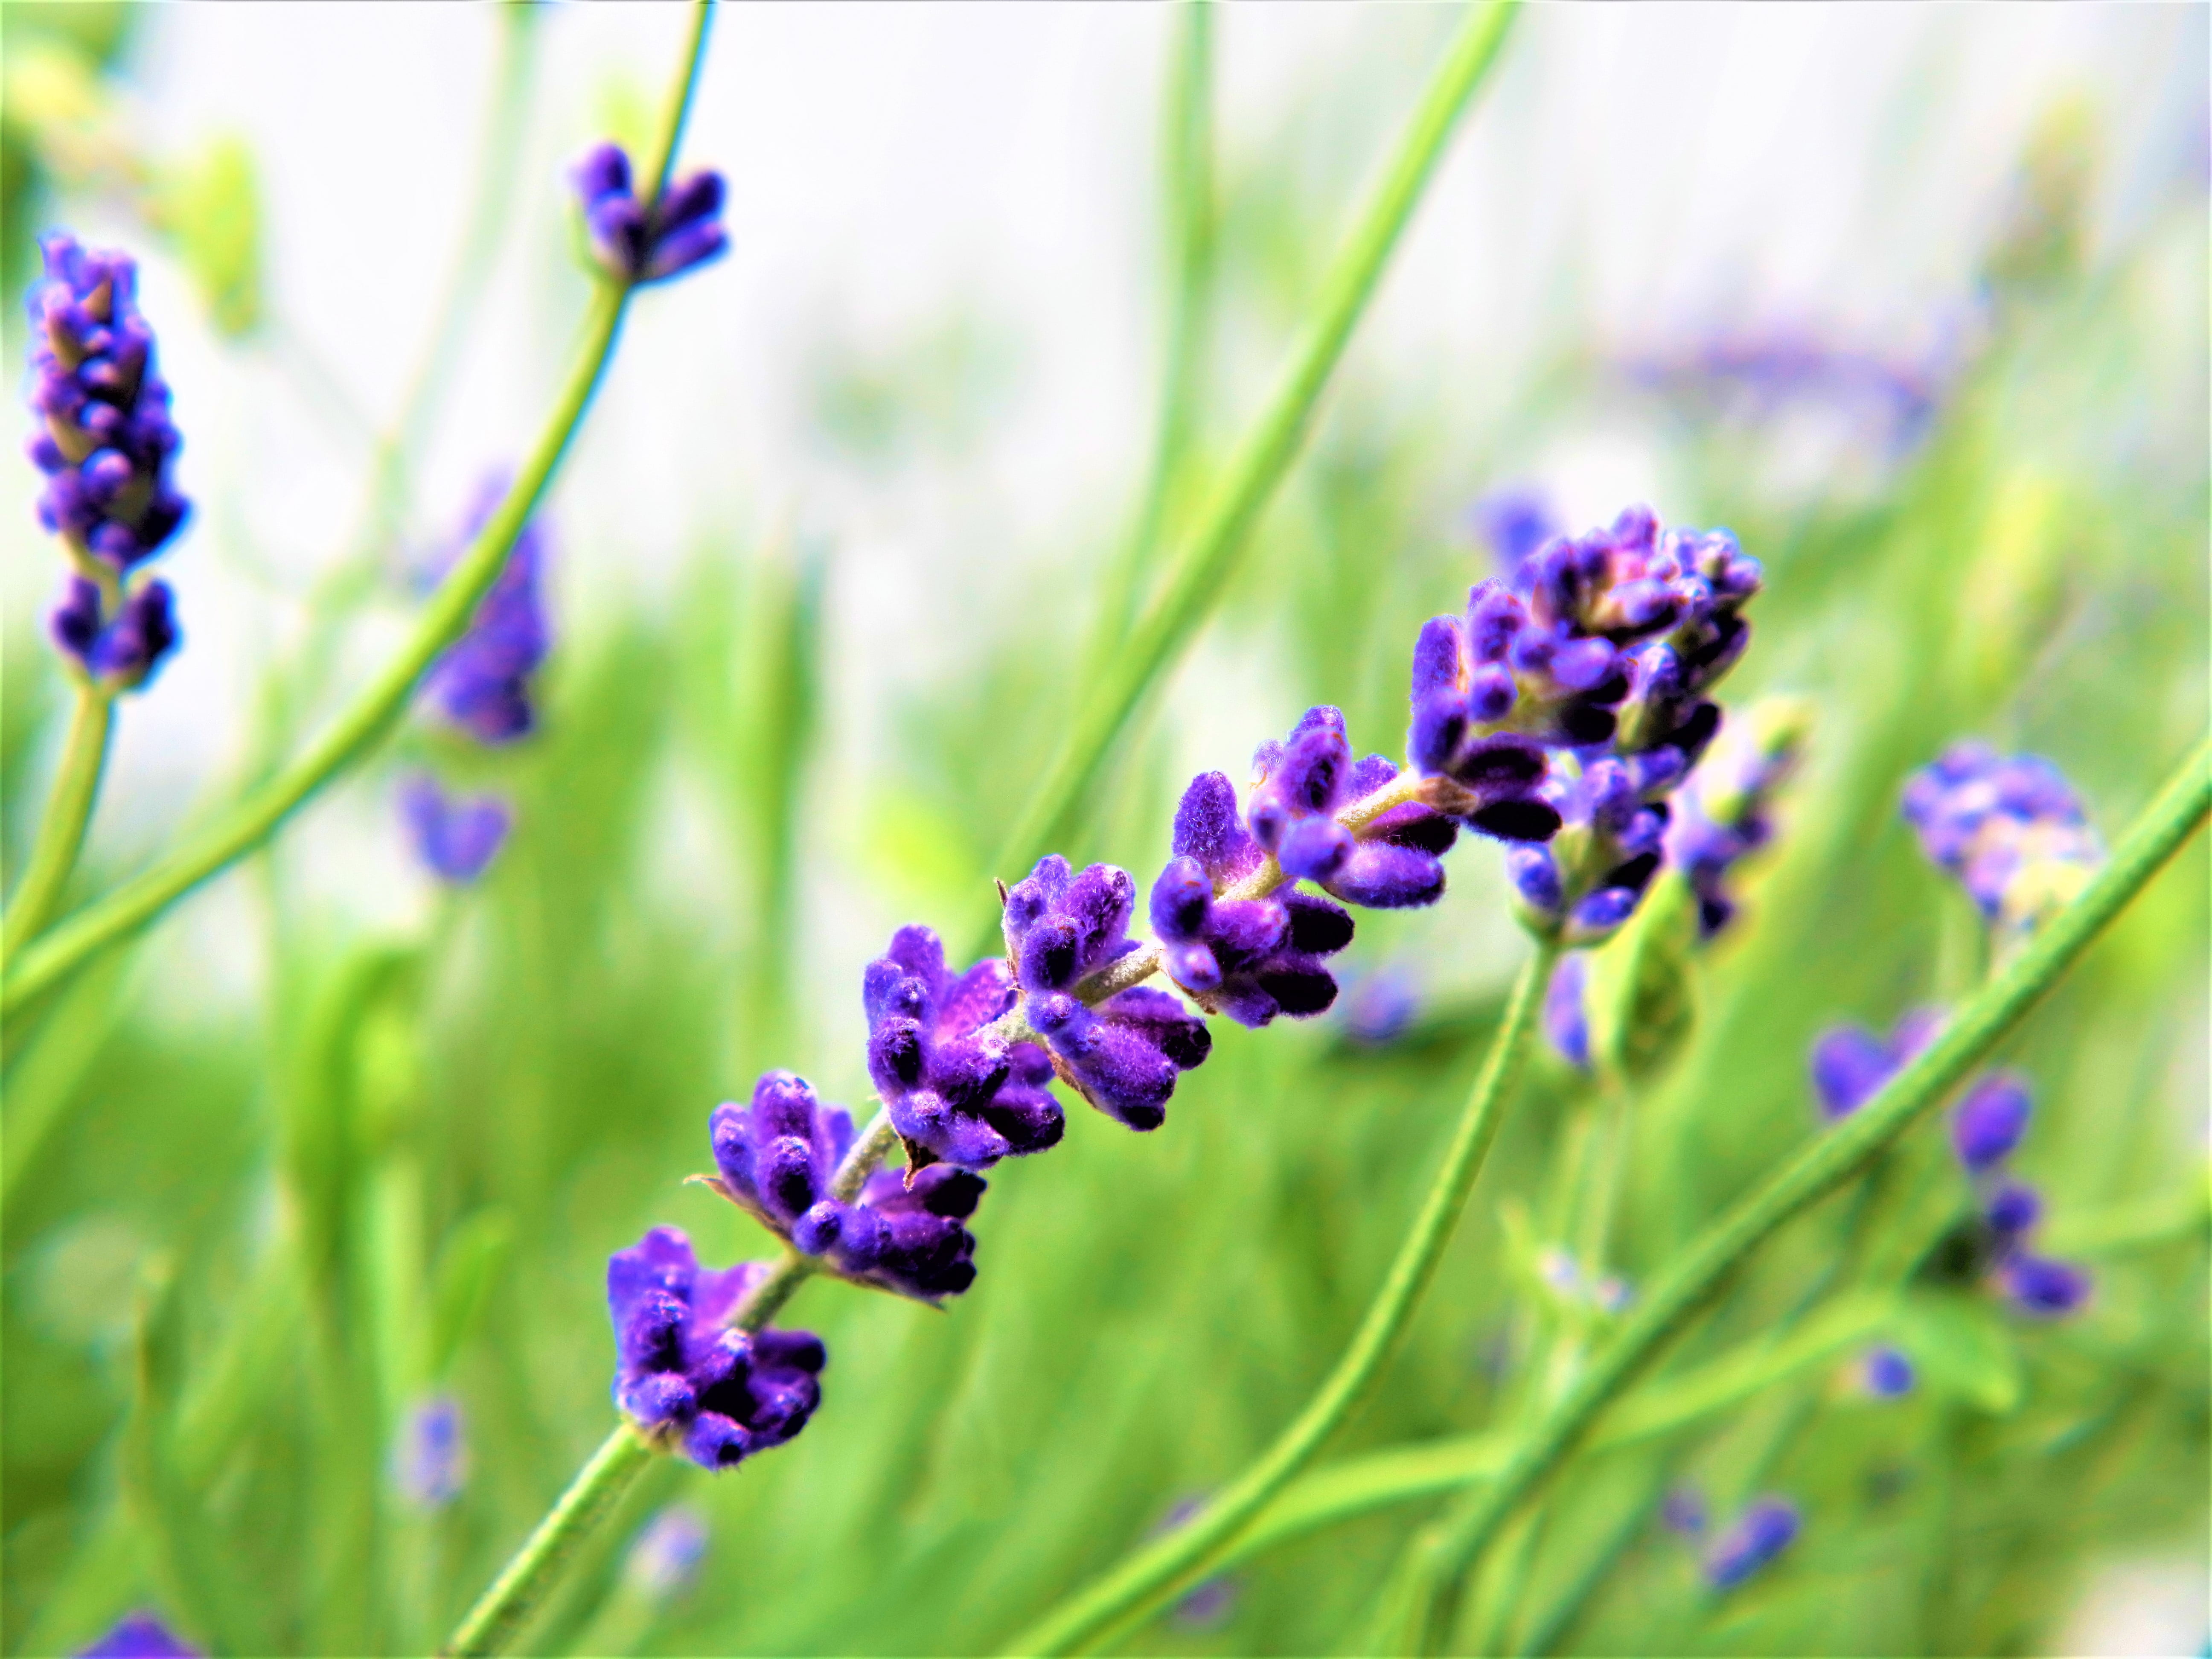 Expert Gardener Outdoor Live Plant Lavender Purple 1.5G, Full Sun